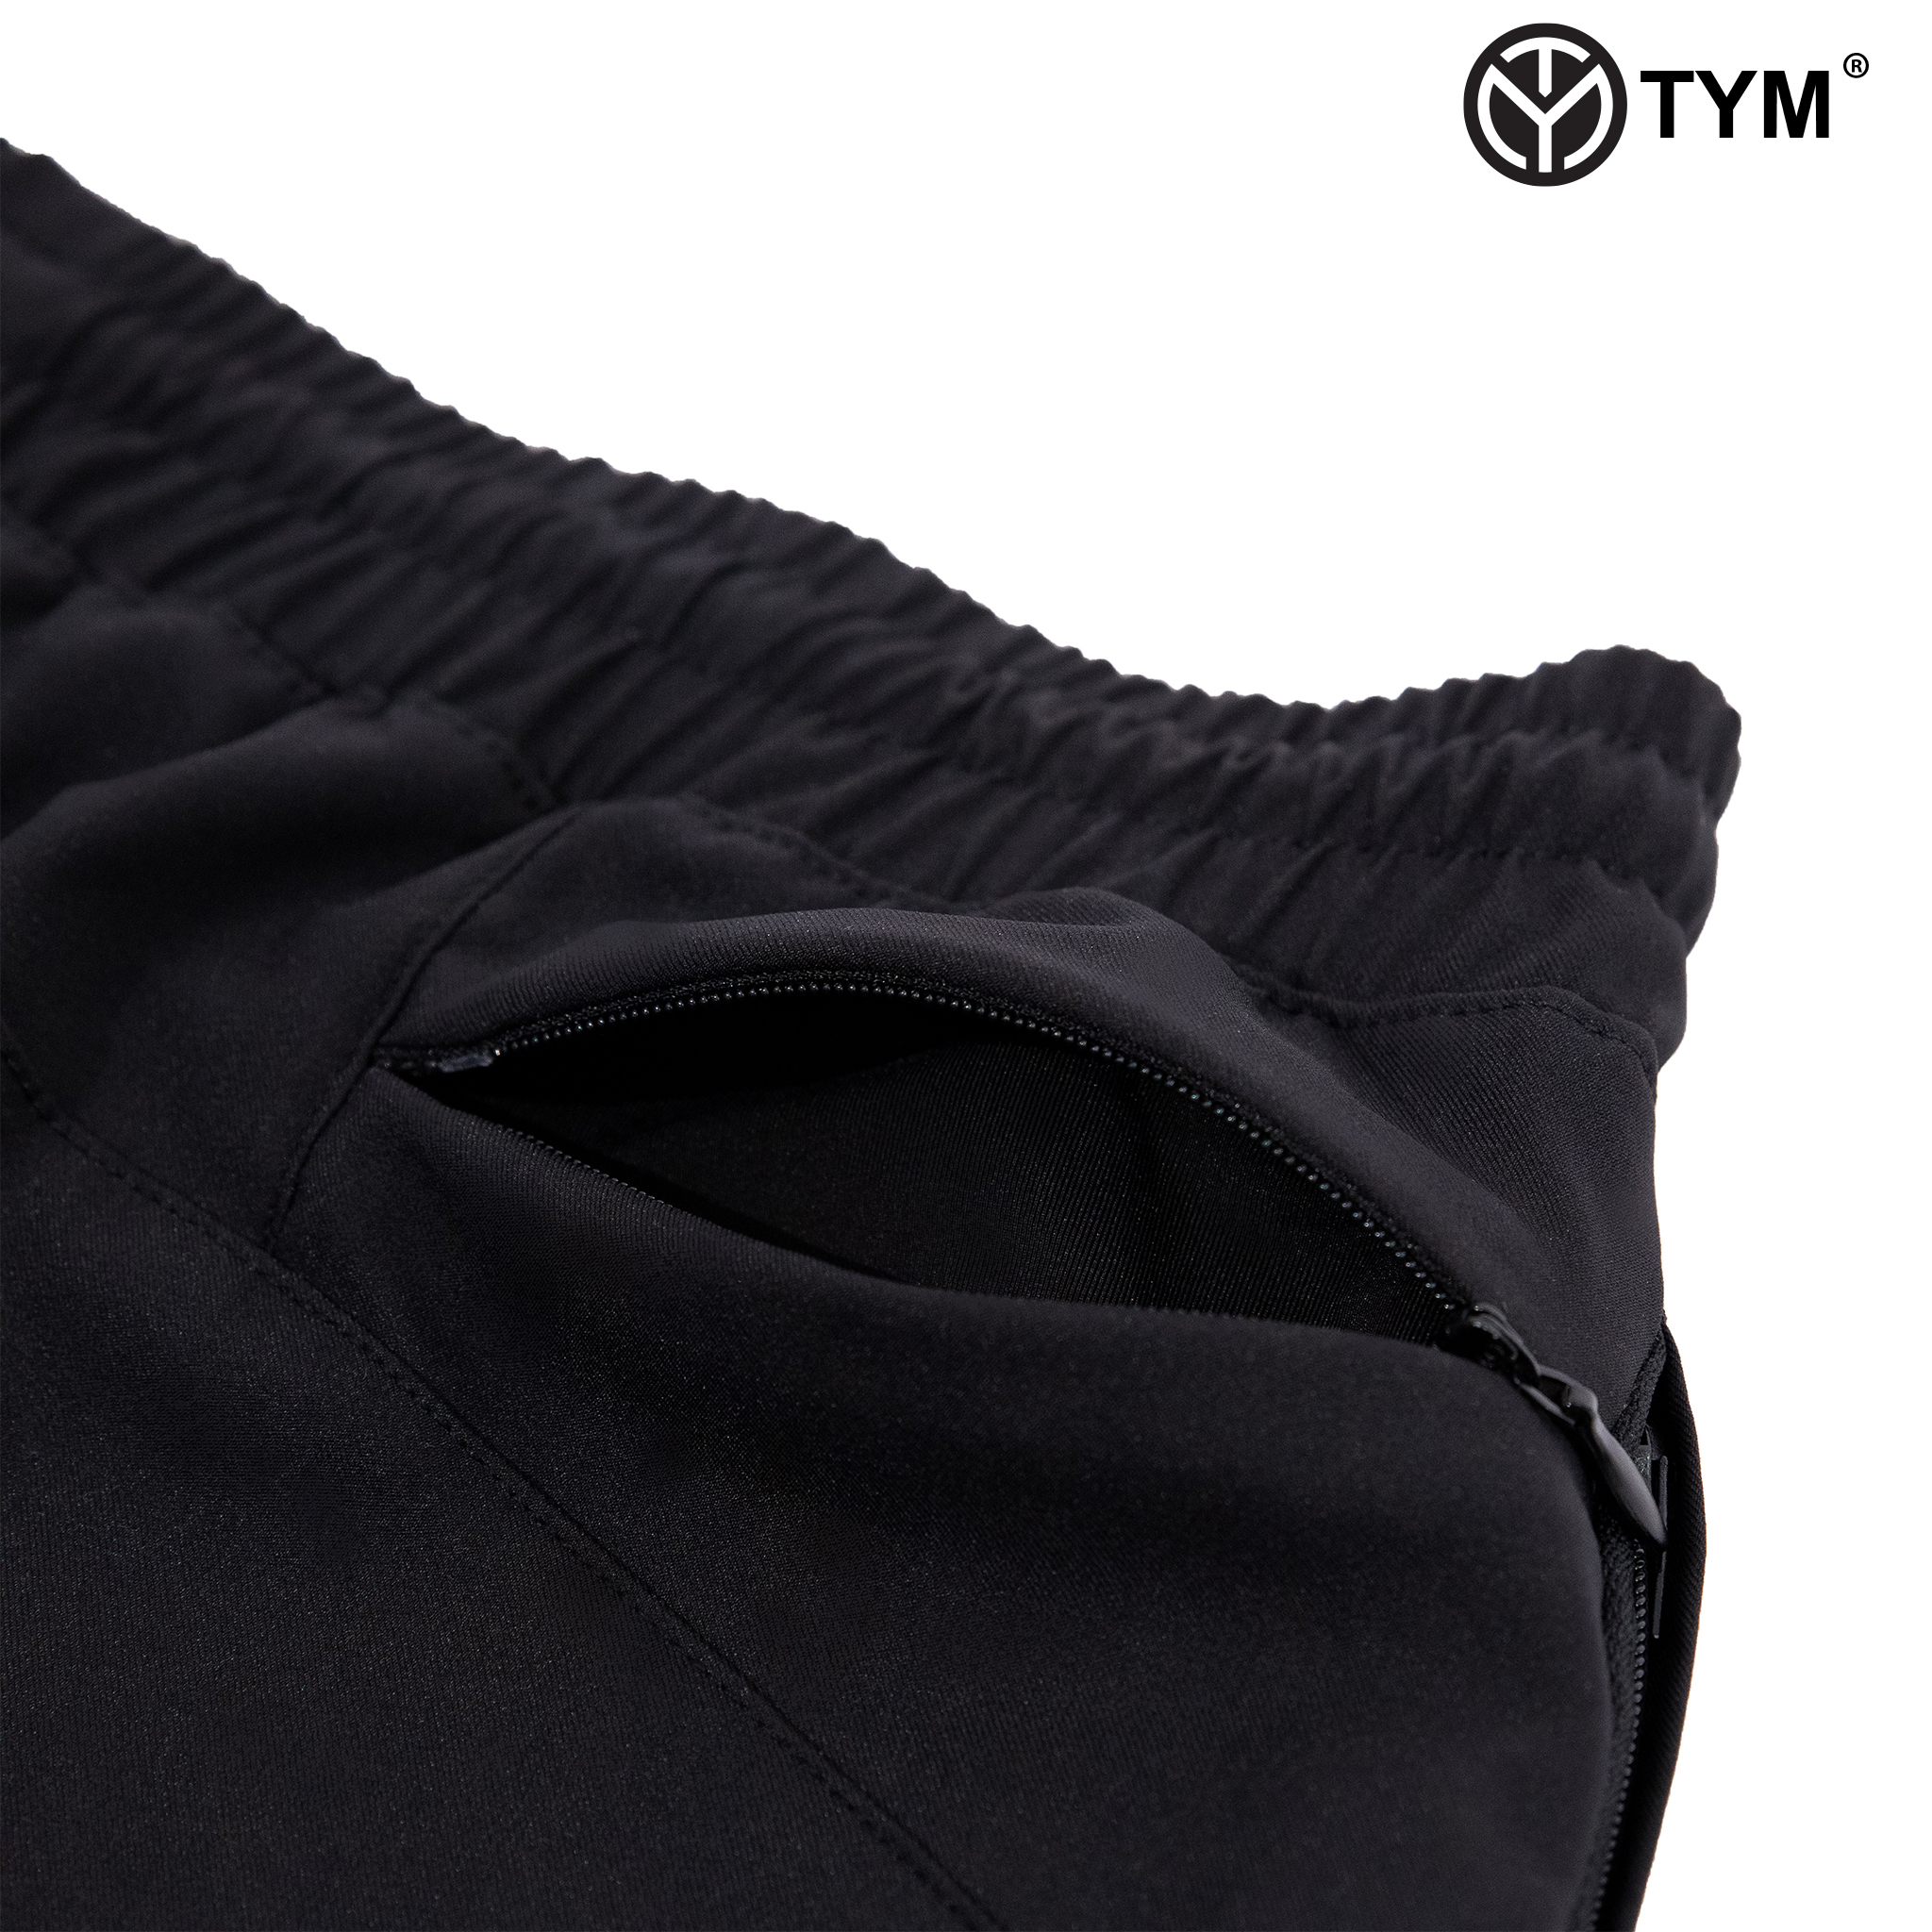 Quần tập Gym Thể Thao Nam 2 lớp TYM có 2 túi trước - vải CoolMax Mềm mại Thấm hút Co dãn tốt QMT003 - TYM FASHION